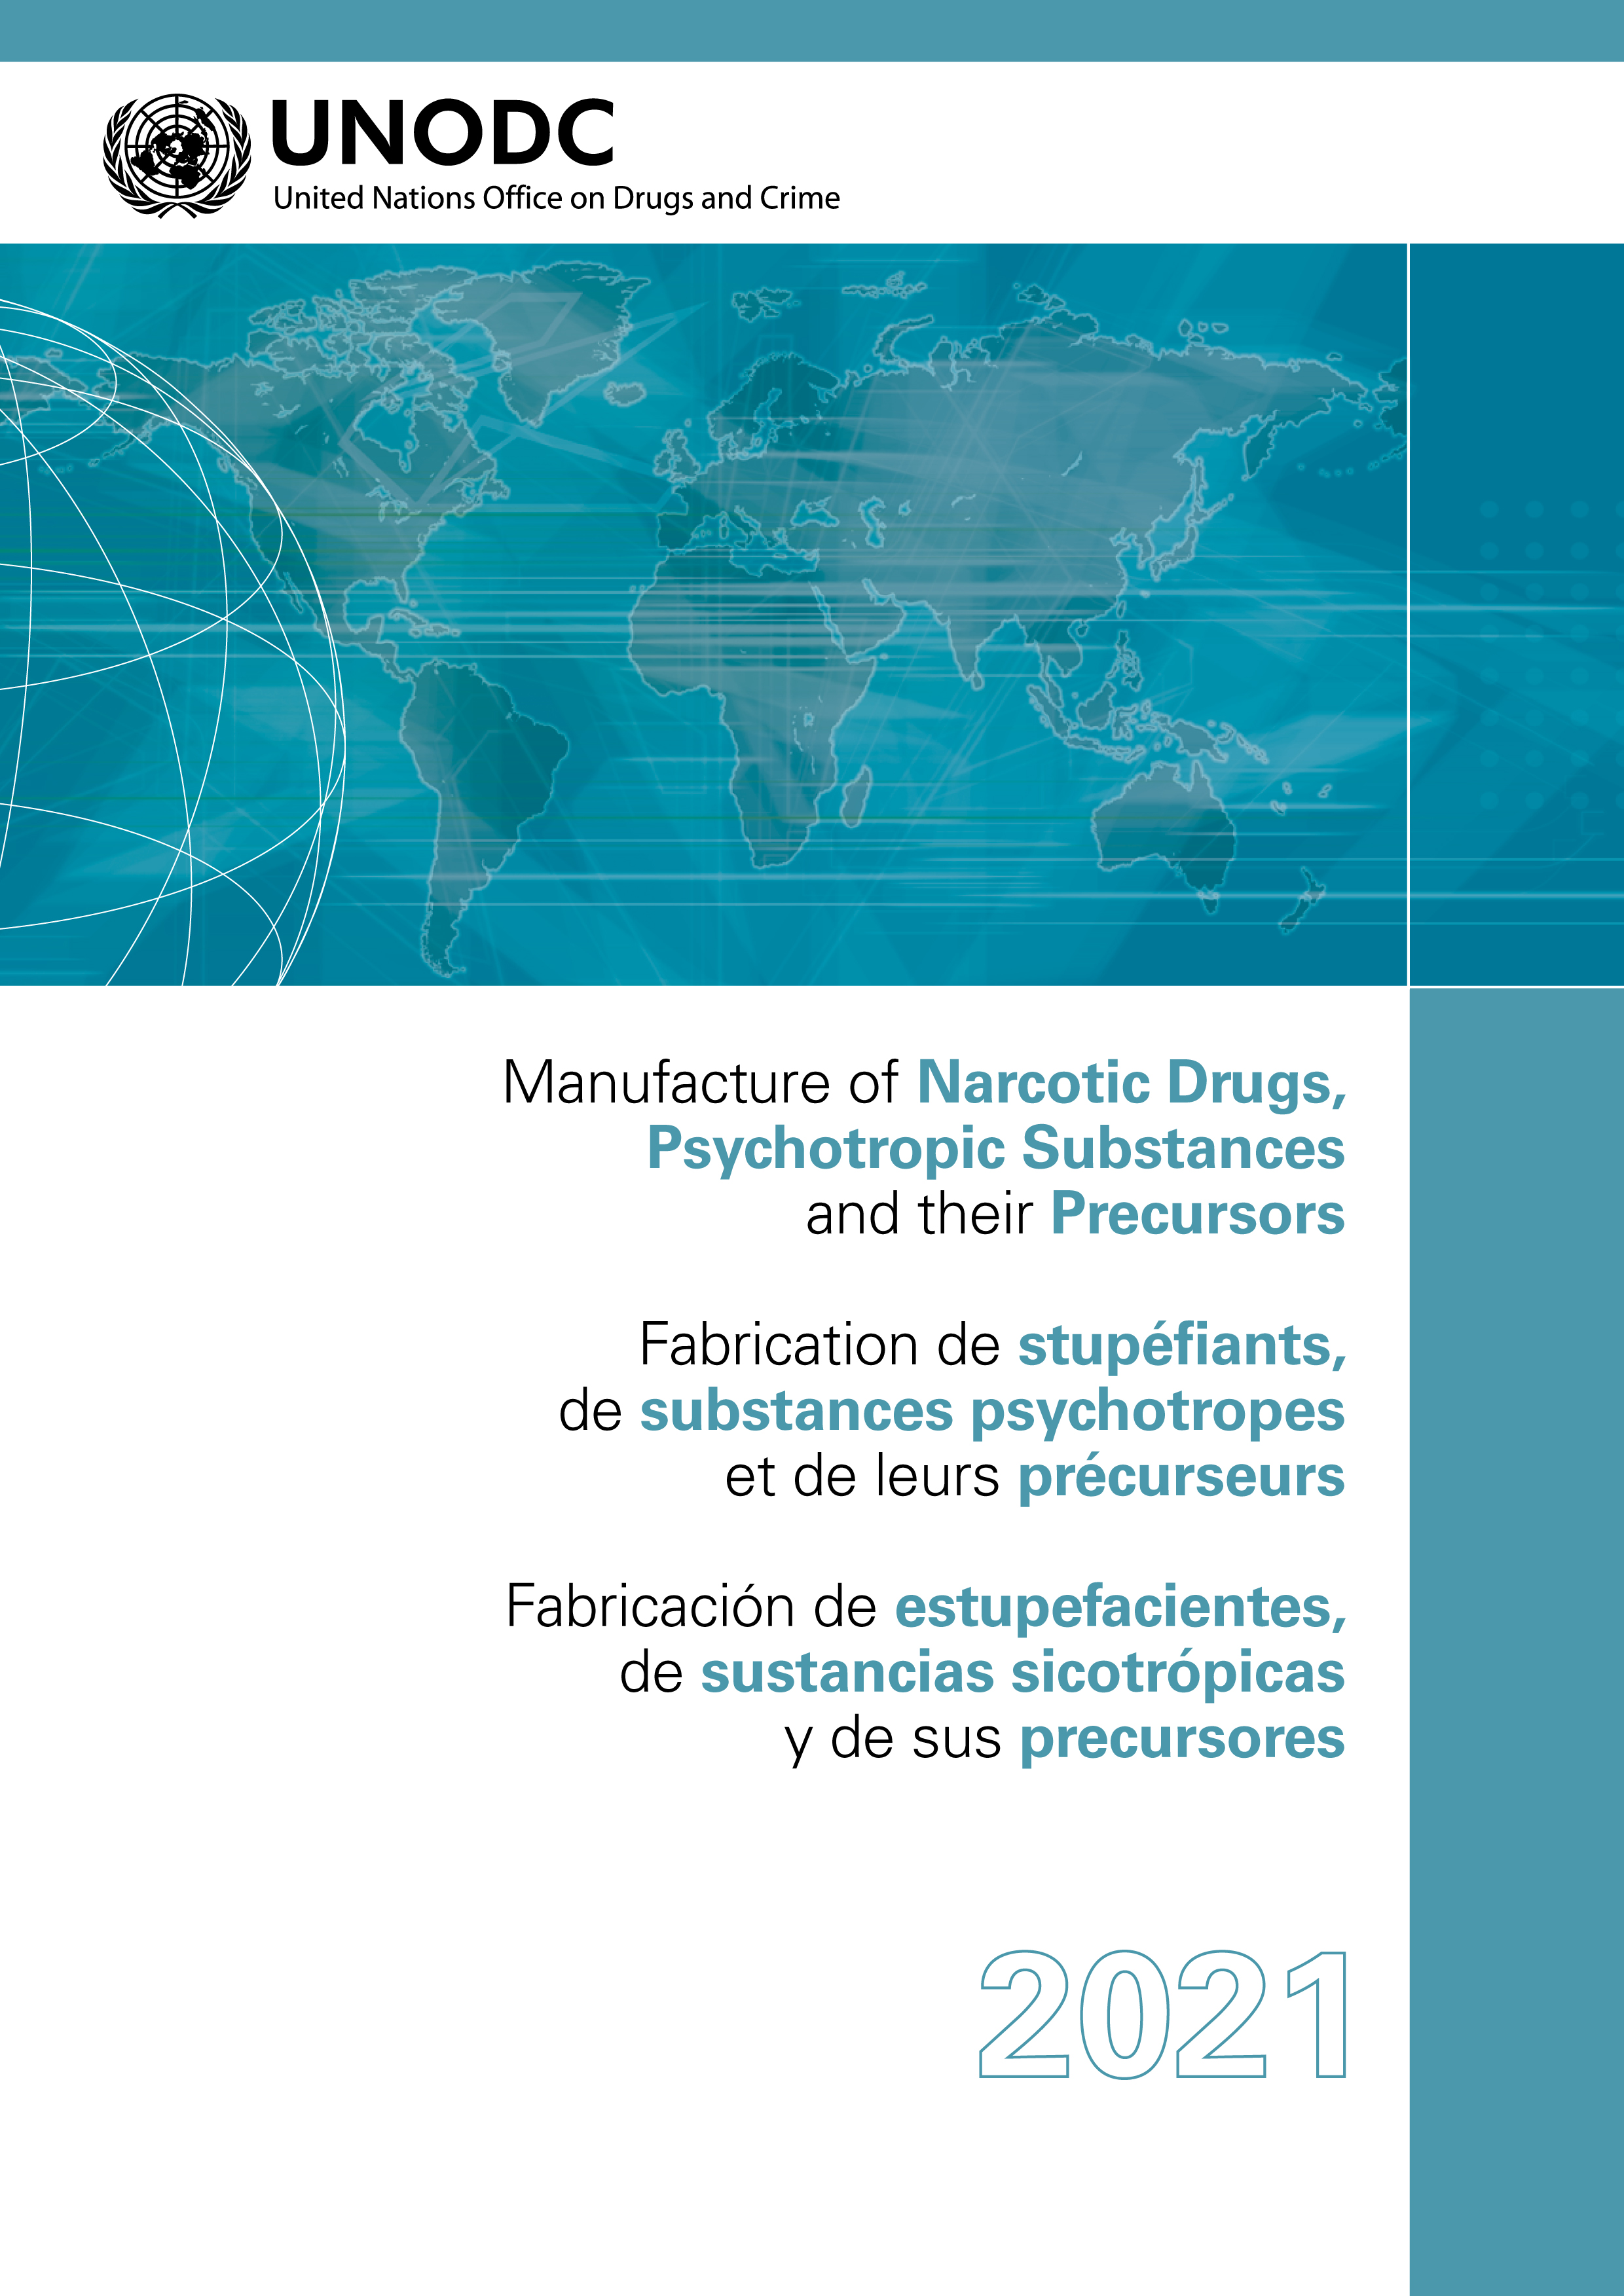 image of Fabrication de stupéfiants, de substances psychotropes et de leurs précurseurs 2021